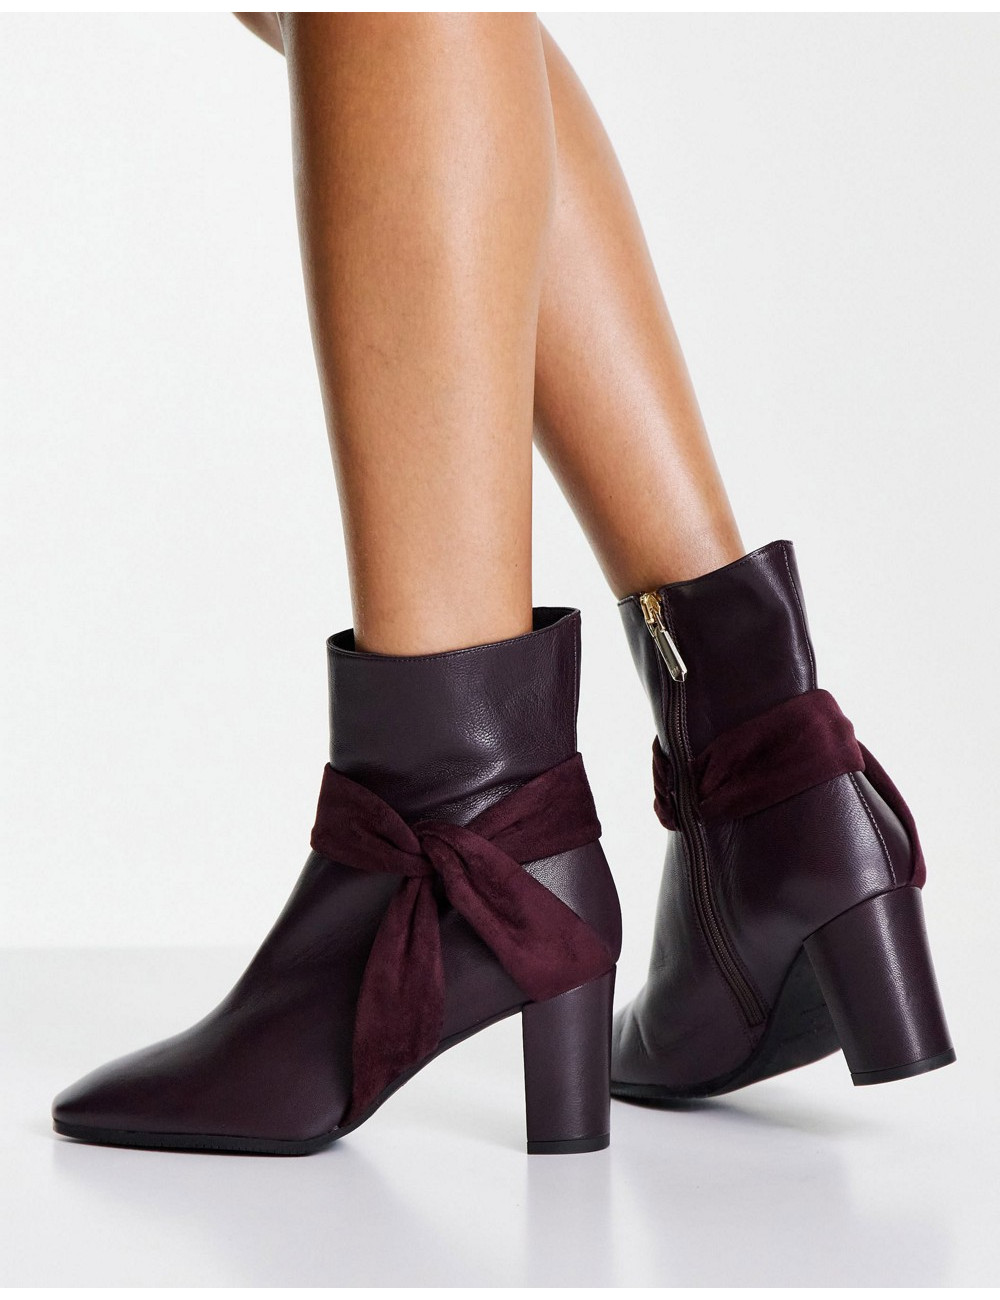 Karen Millen heeled boots...